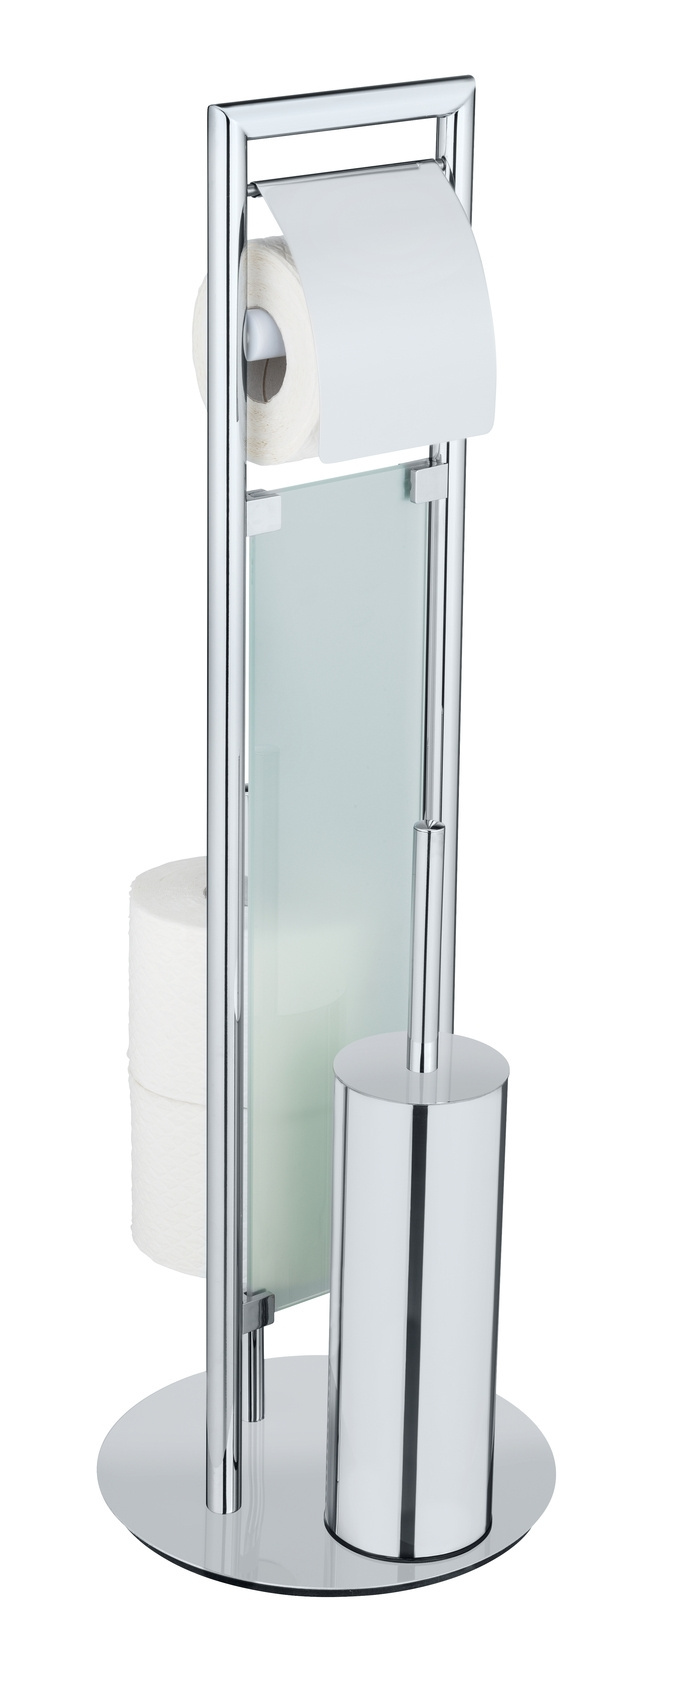 WC-Garnitur SULMONA | WC-Garnituren günstig und | | kaufen bei Badaccessoires Räume | online | Badezimmer Polstermöbel